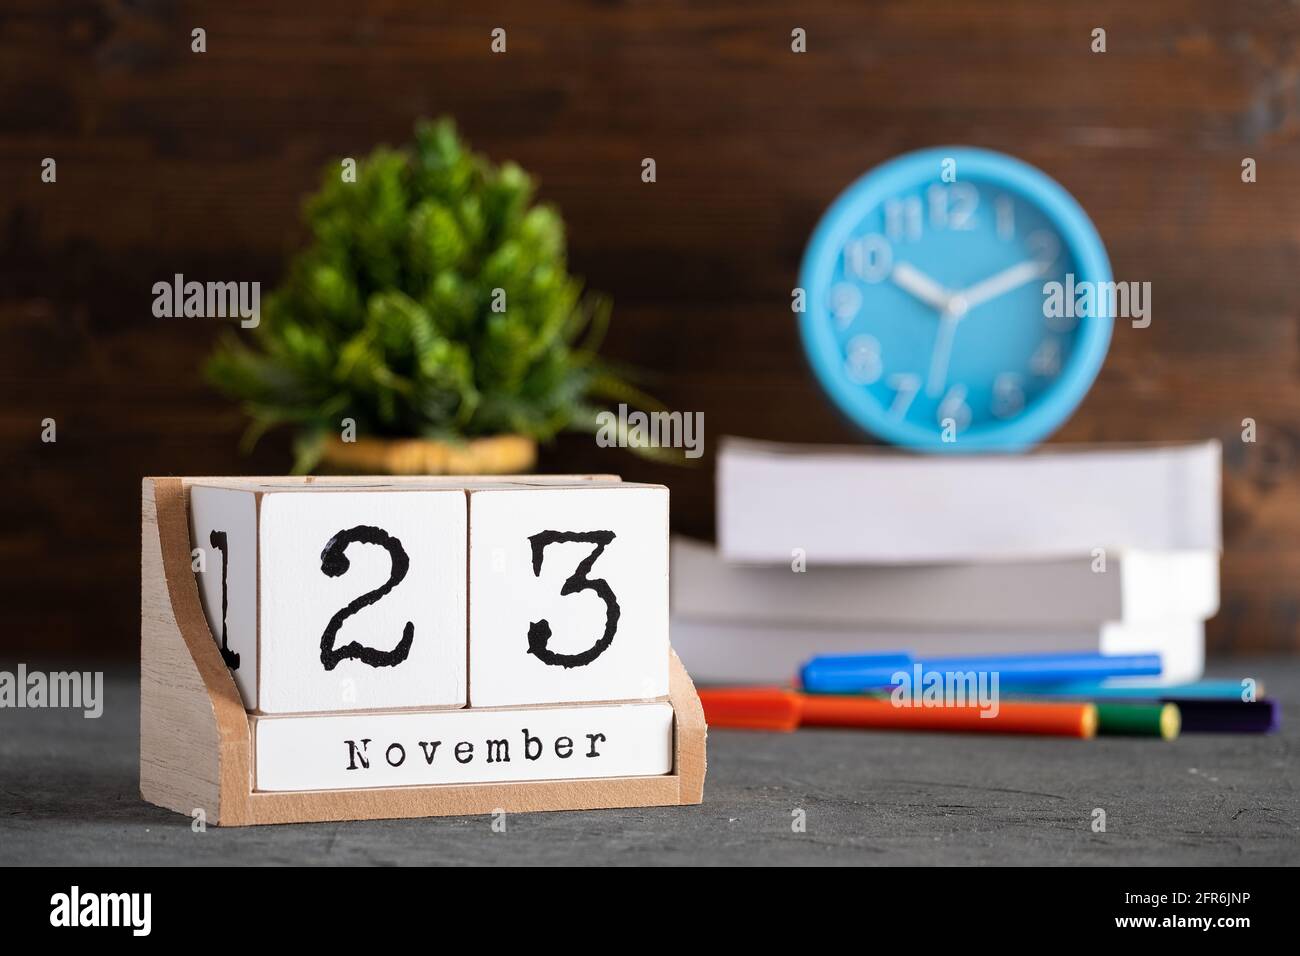 23 novembre. Calendrier cubique en bois de novembre 23 avec objets flous sur fond. Banque D'Images